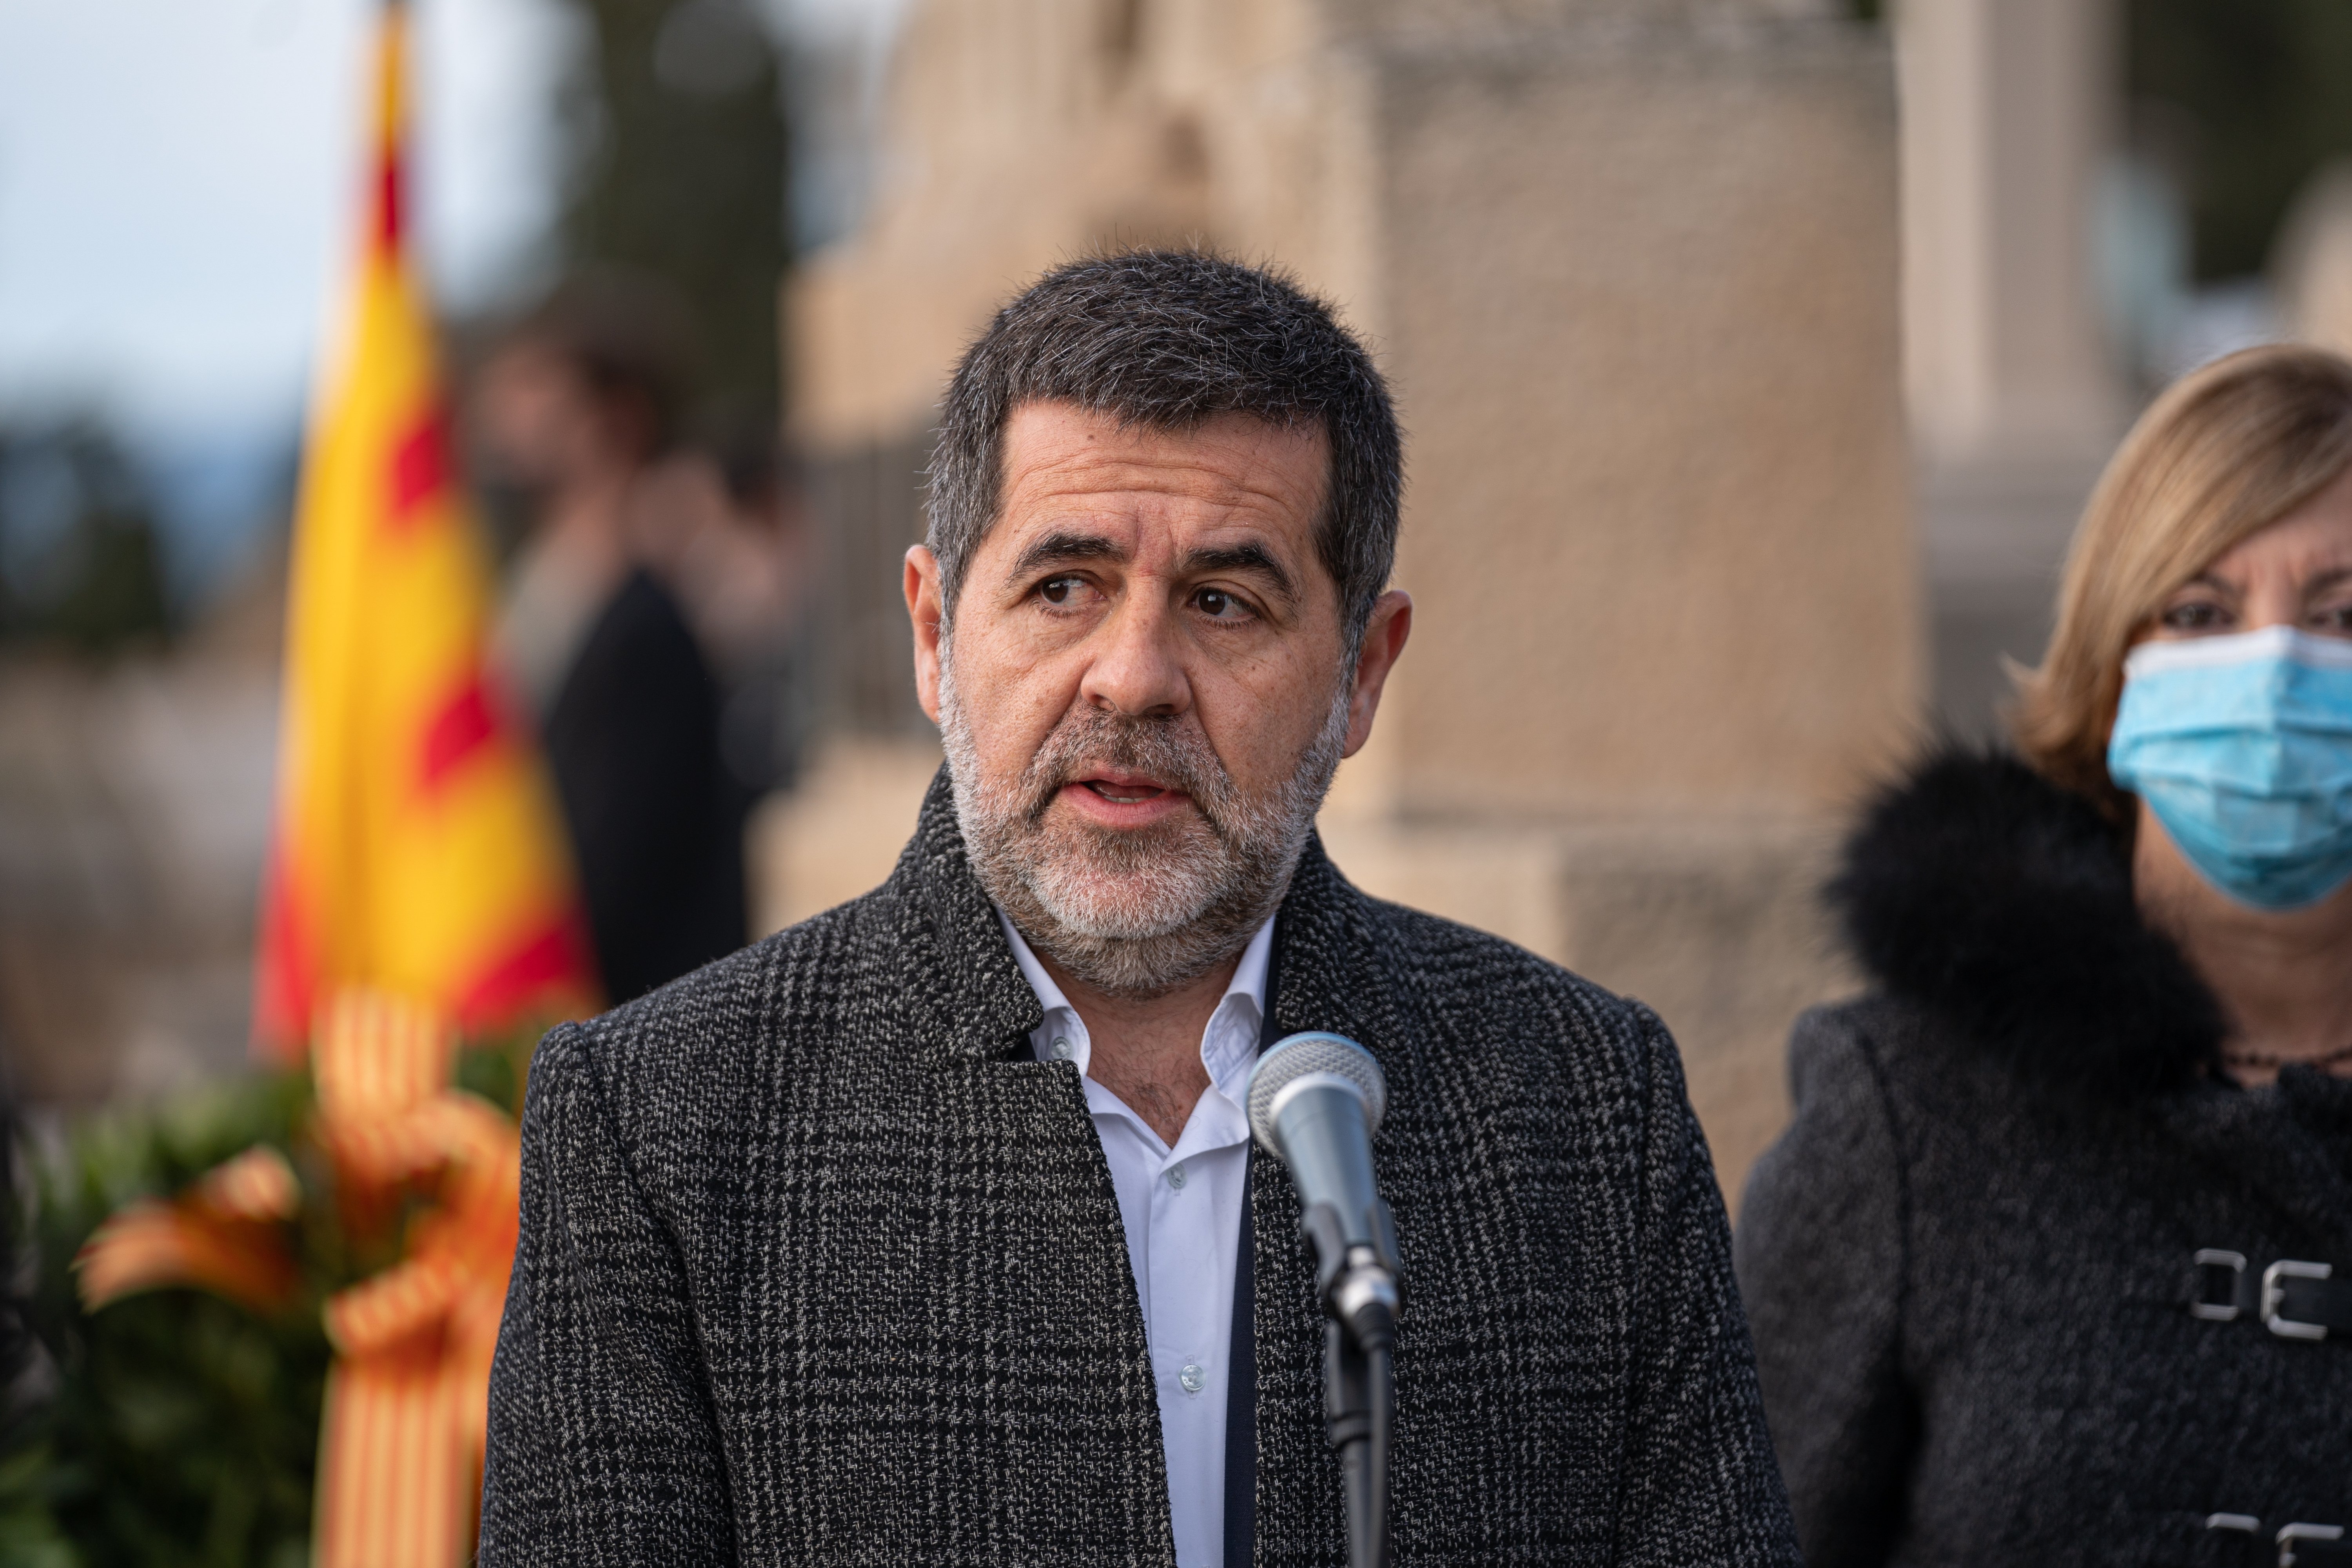 Sànchez exigeix al govern espanyol que acabi amb "l'excepcionalitat" dels presos bascos